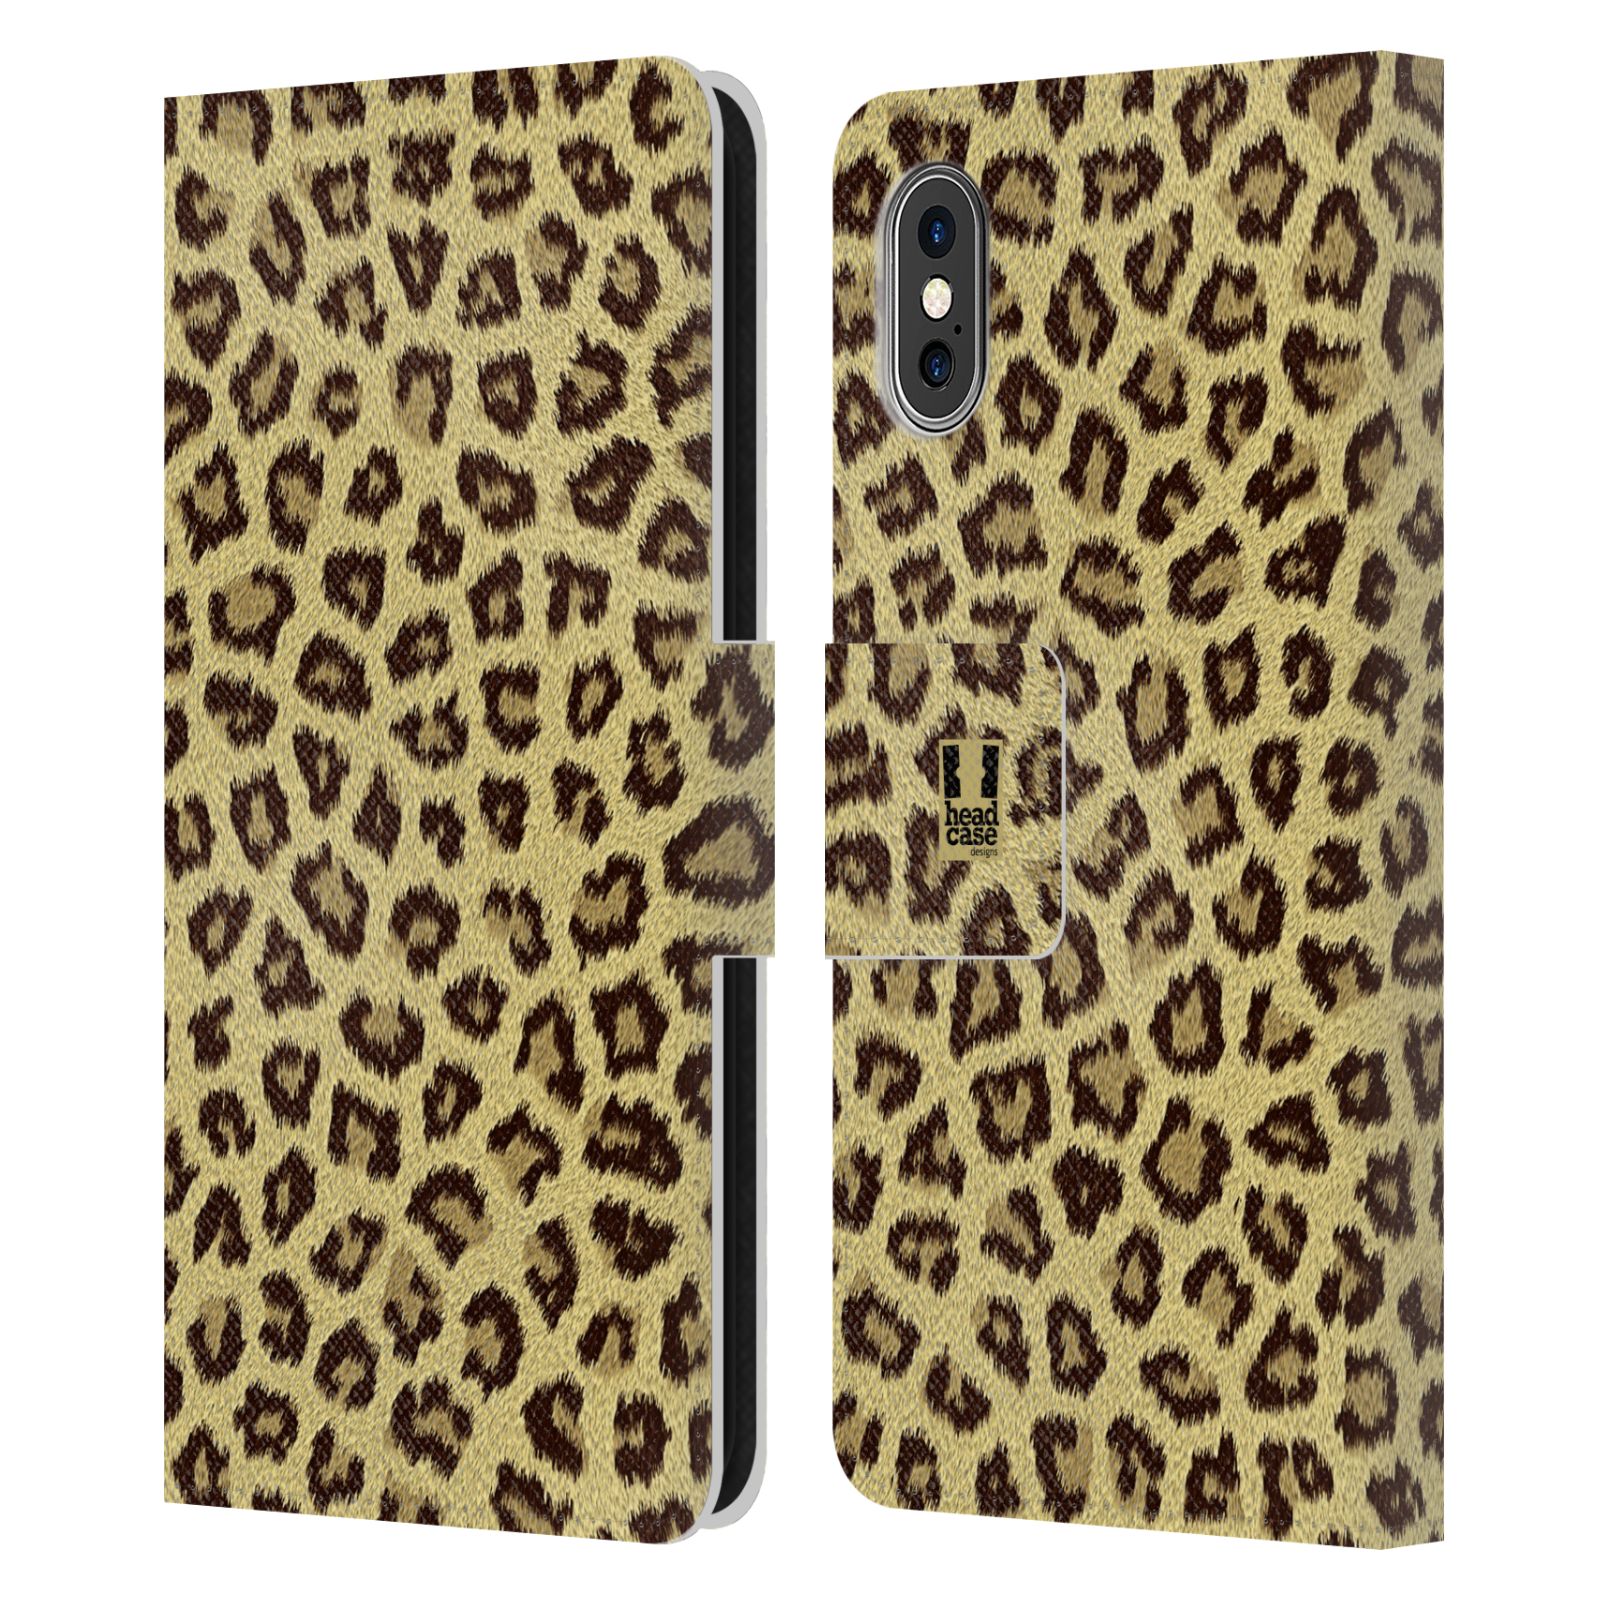 HEAD CASE Flipové pouzdro pro mobil Apple Iphone X / XS zvíře srst divoká kolekce jaguár, gepard